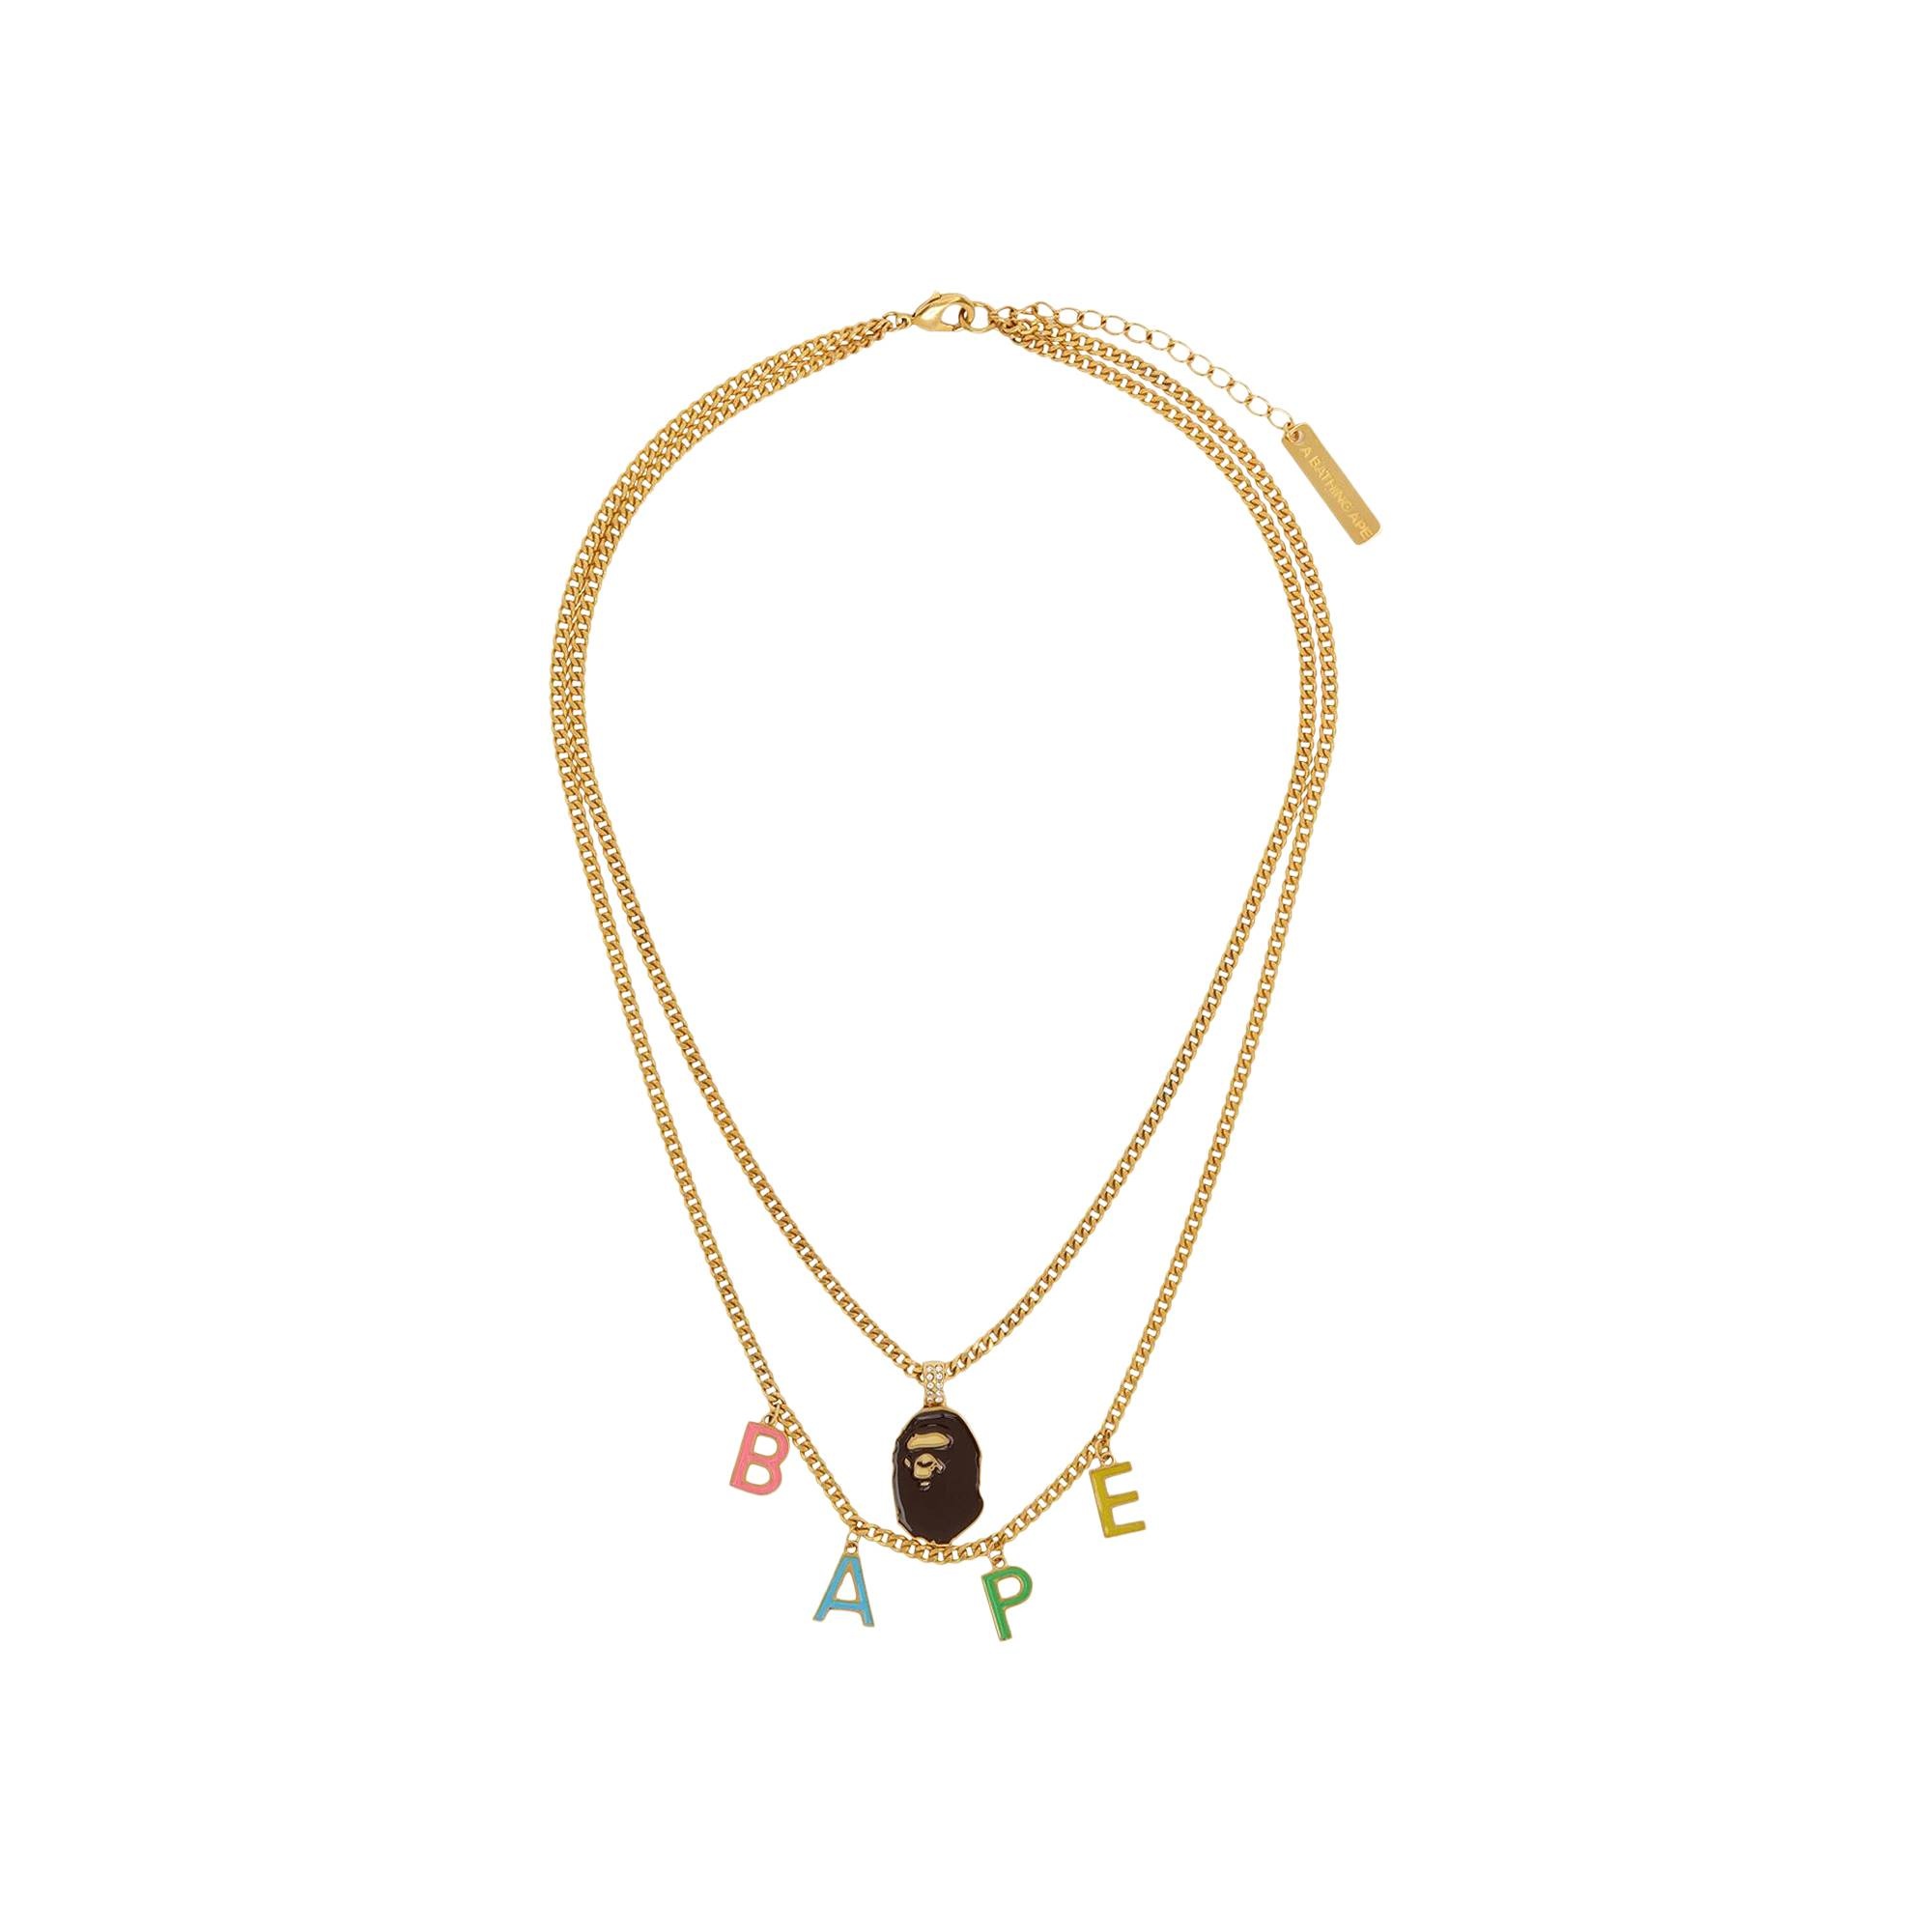 BAPE Ape Head Double Chain Necklace 'Gold' - 1